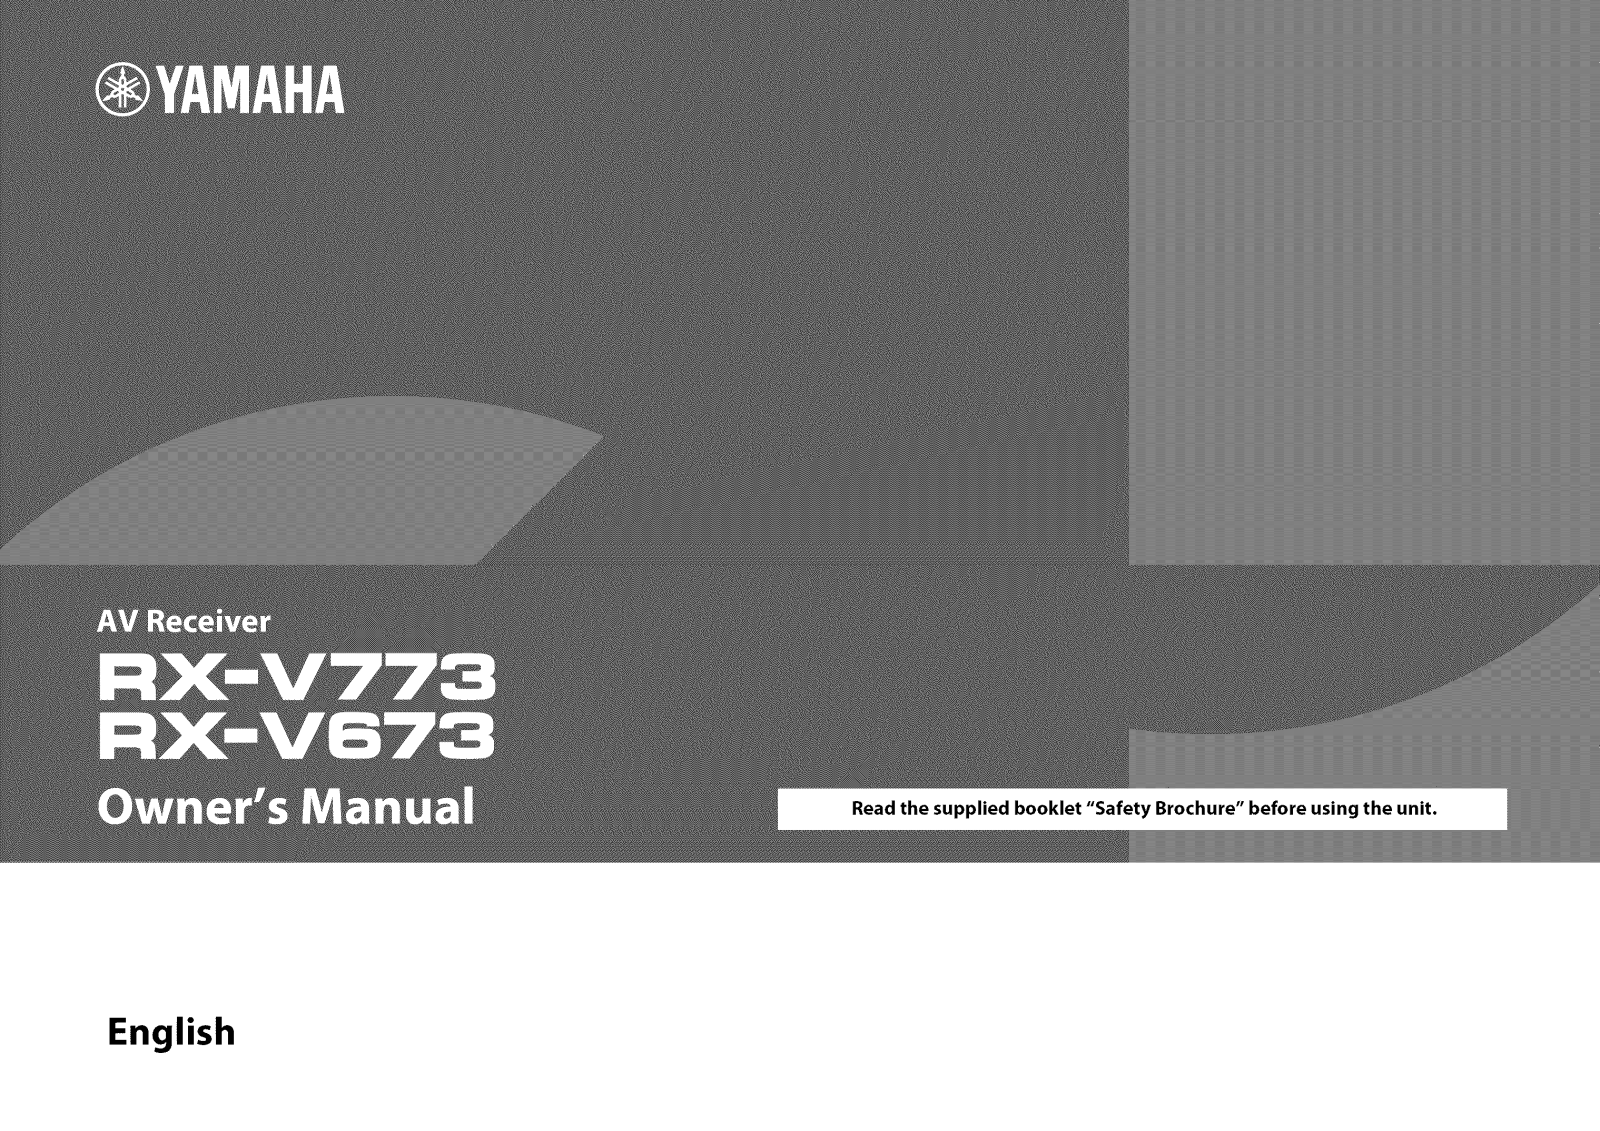 Yamaha RX-V773, RX-V673 User Manual